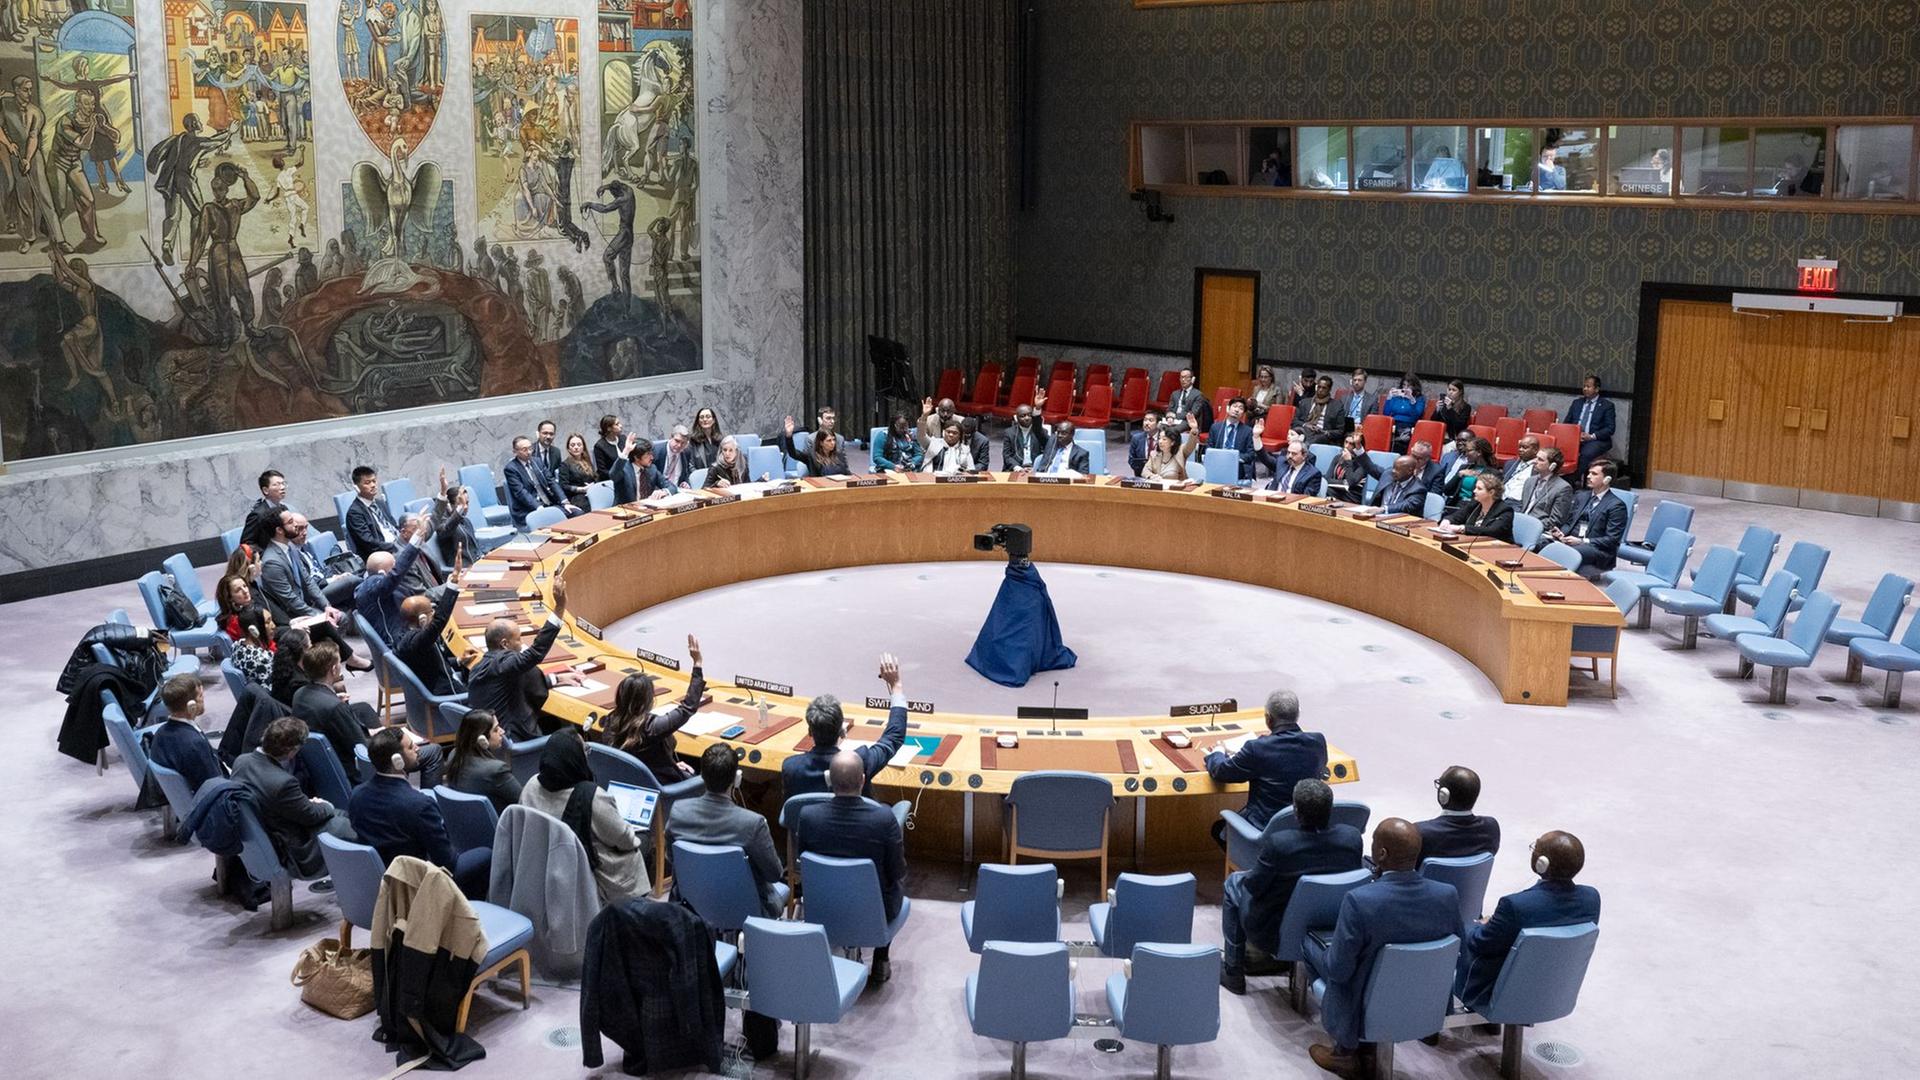 Die Delegierten im UNO-Sicherheitsrat heben die Hände zur Abstimmung, die Tische sind im Kreis angeordnet.